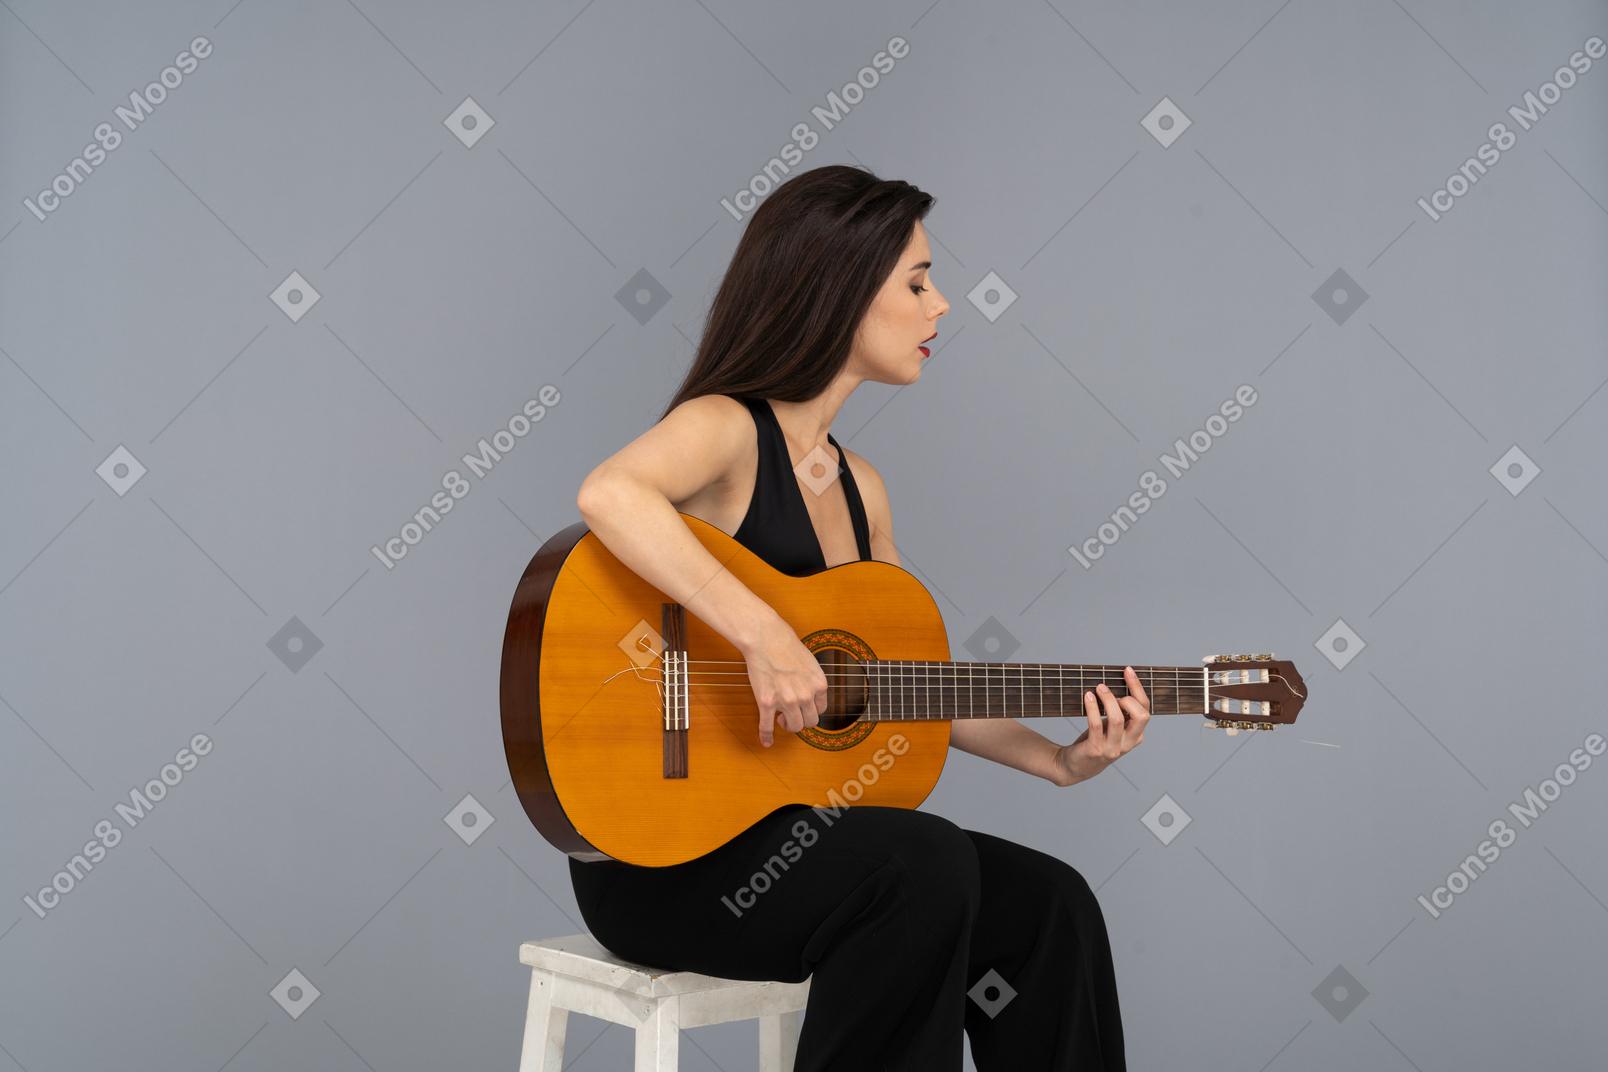 Dreiviertelansicht einer sitzenden jungen dame im schwarzen anzug, die gitarre spielt